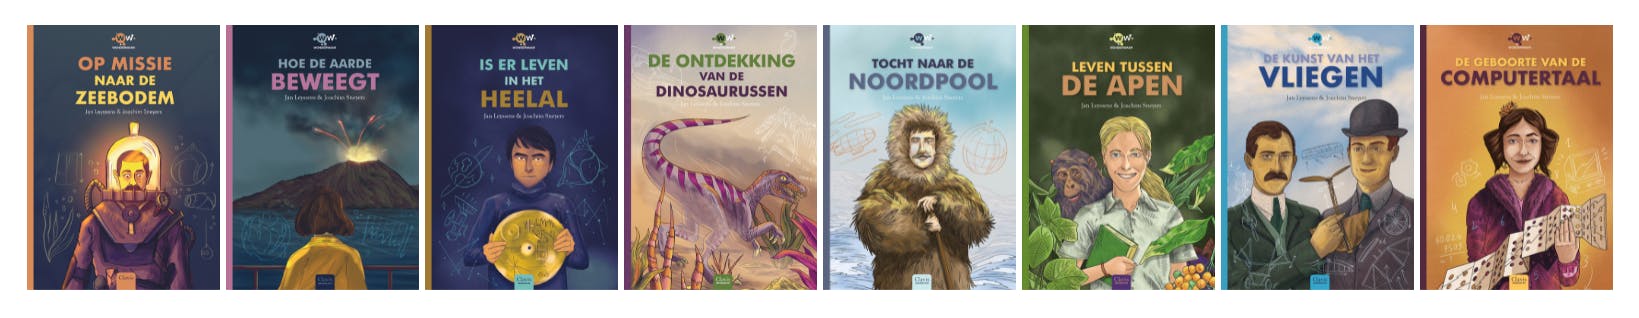 covers van alle titels uit de reeks Wonderwaar van Jan Leyssens en Joachim Sneyers